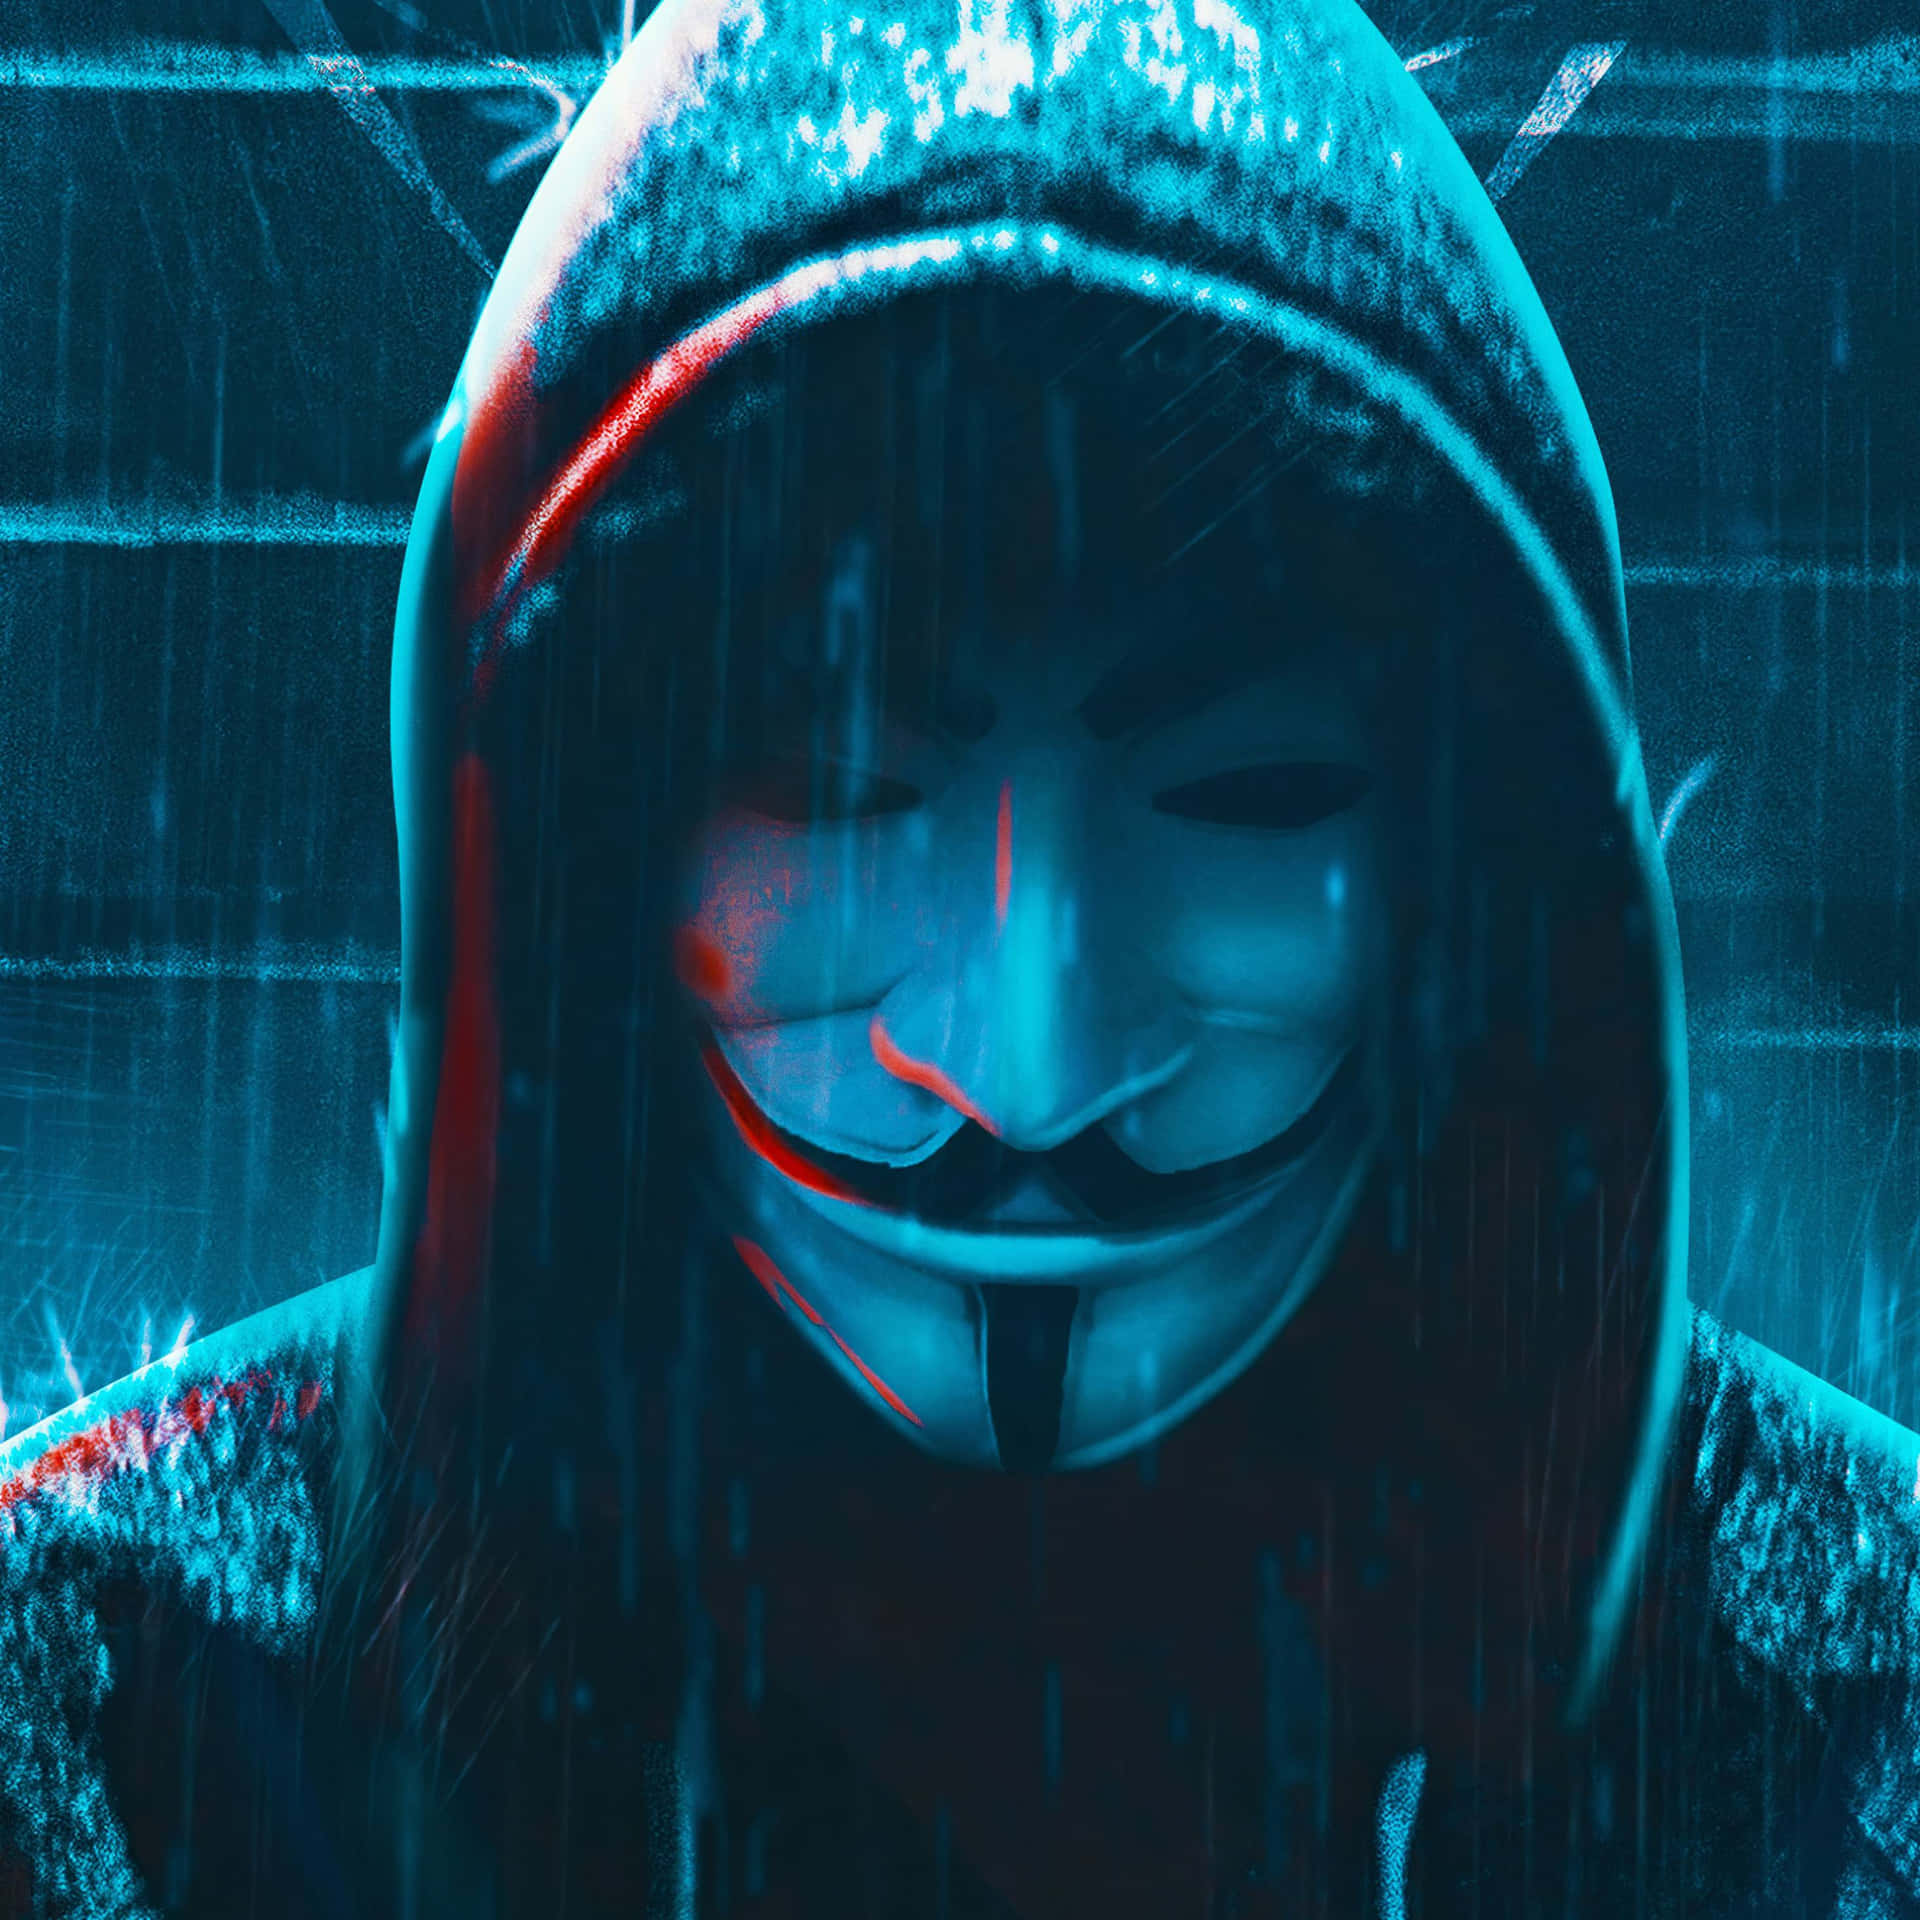 Anónimohombre De Máscara 4k Bajo La Lluvia. Fondo de pantalla